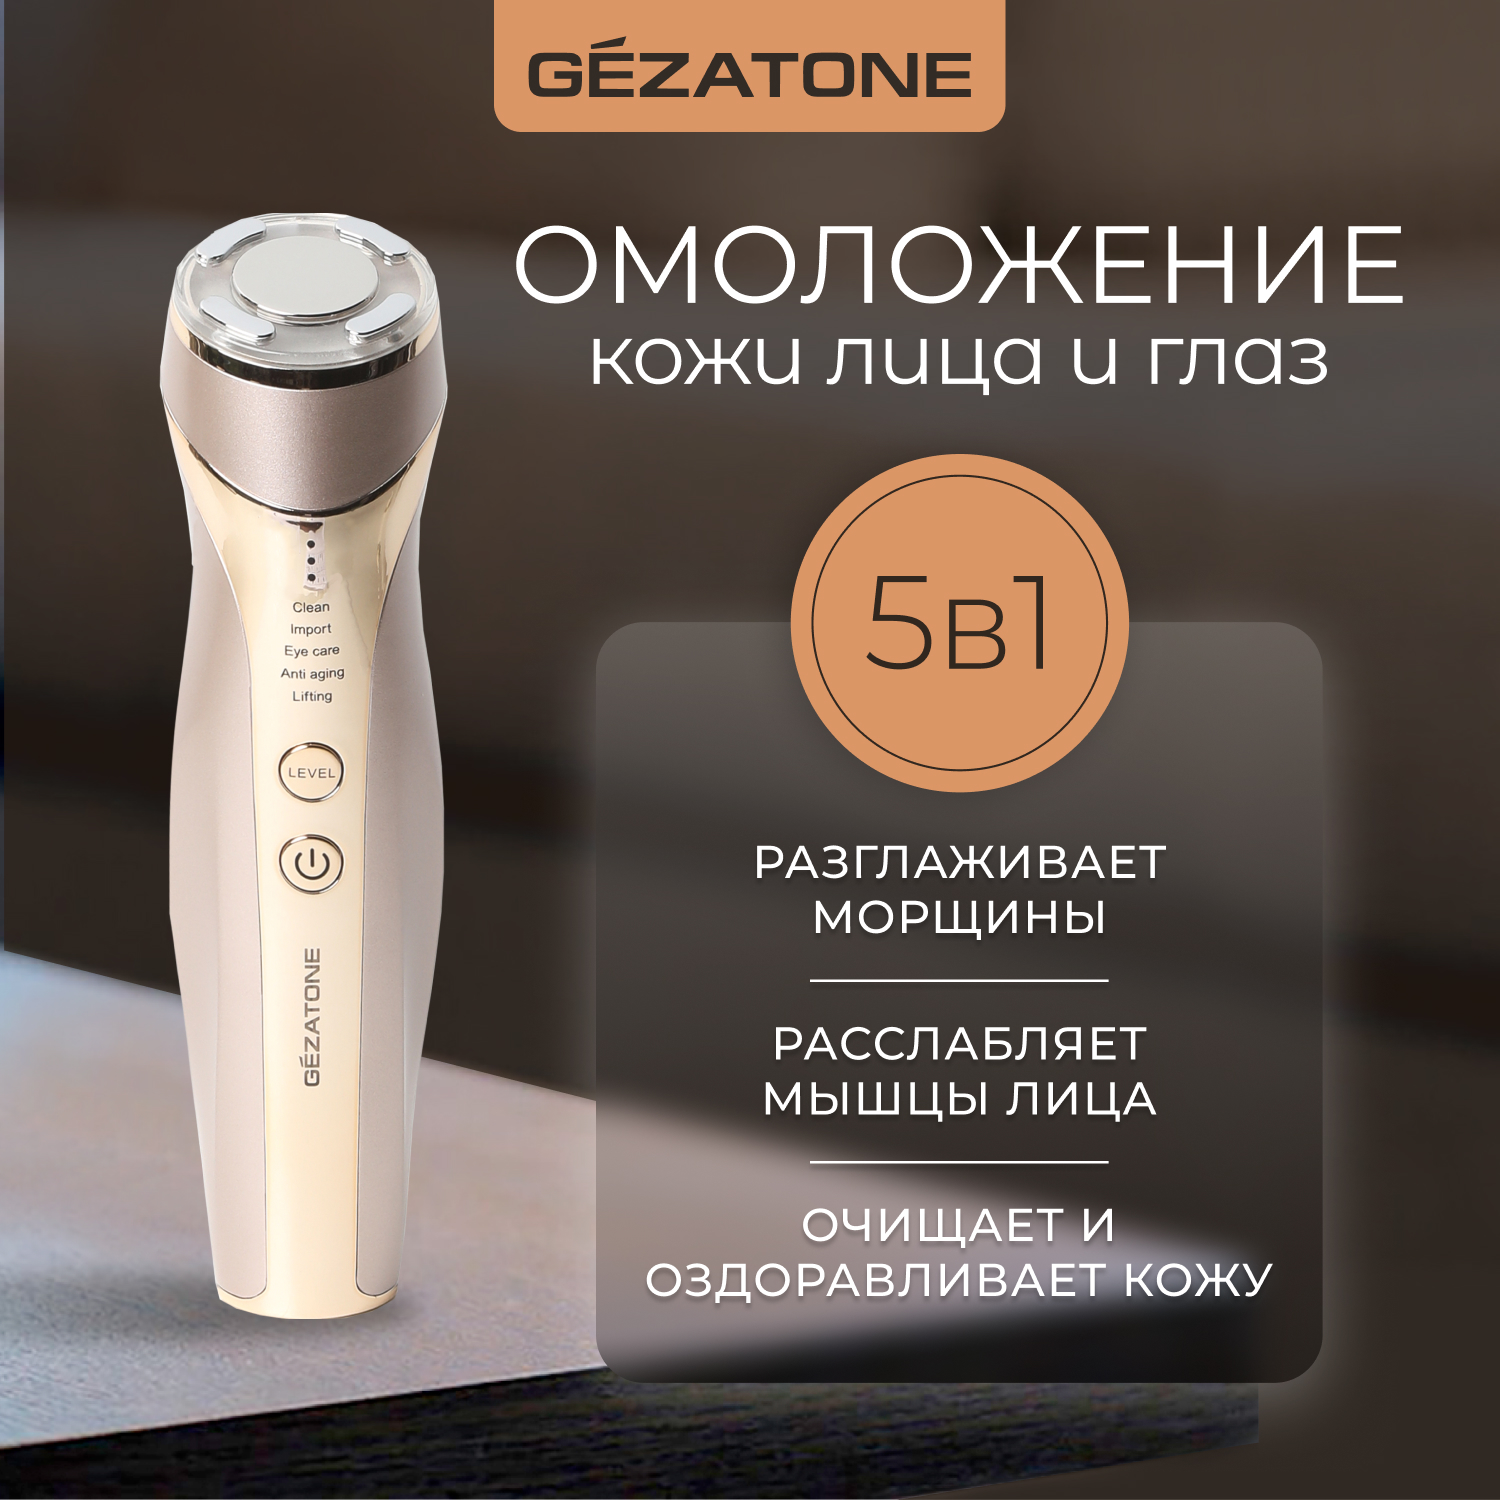 Ультразвуковой массажер GEZATONE m357 для омоложения кожи лица с 5 функциями аппарат gezatone для ультразвуковой чистки с 6 функциями biosonic 1010